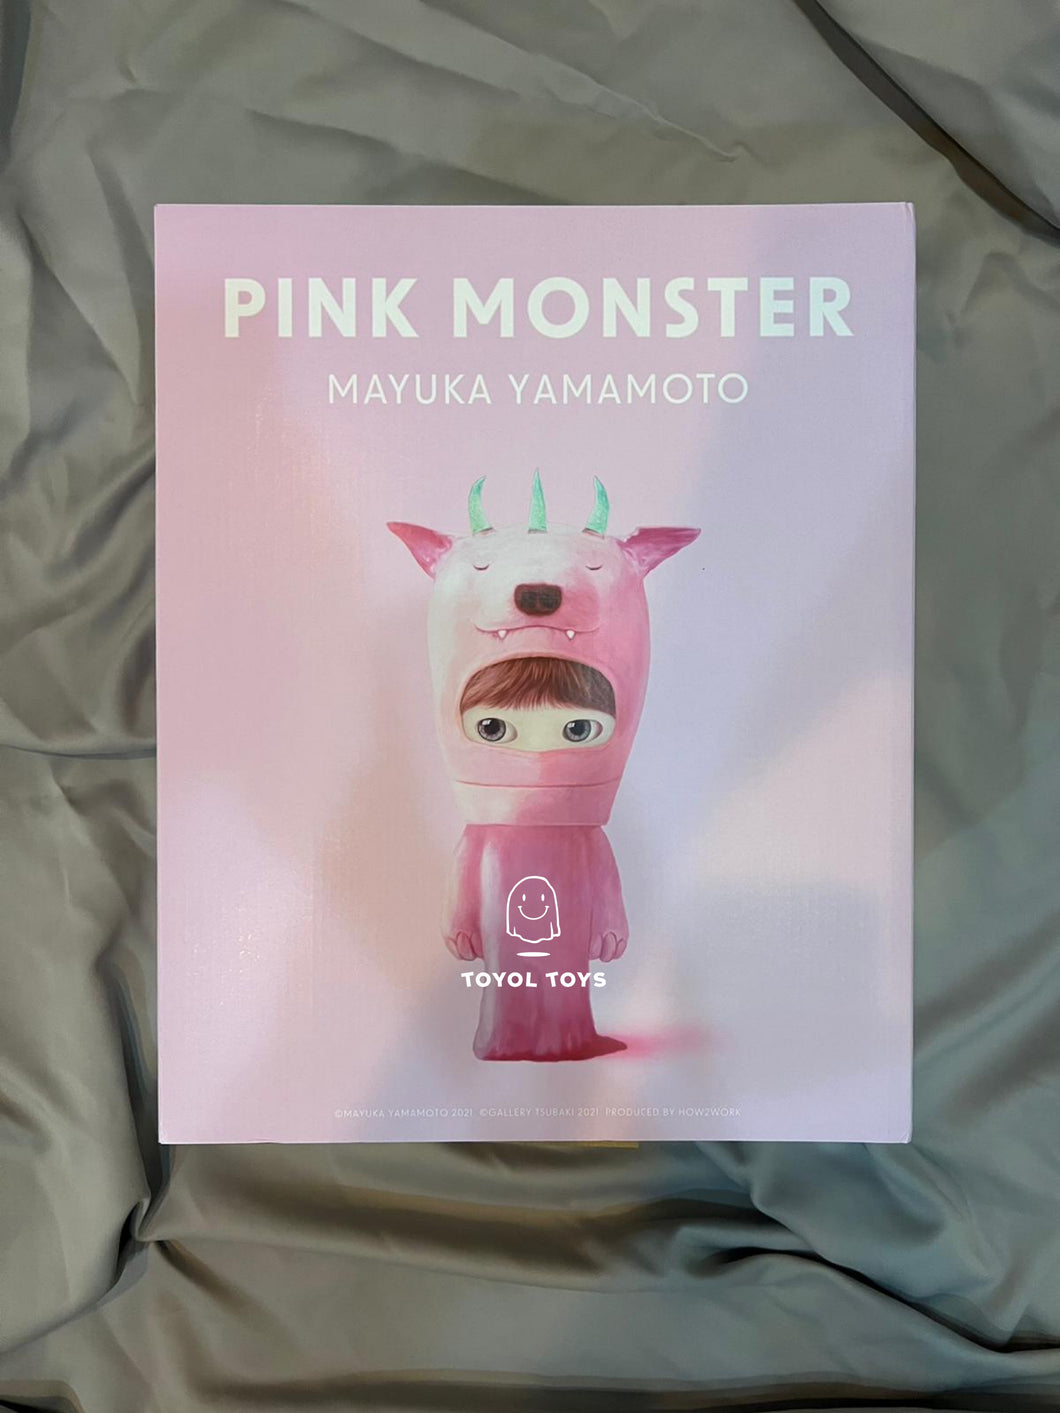 Mayuka Yamamoto - “Pink Monster”